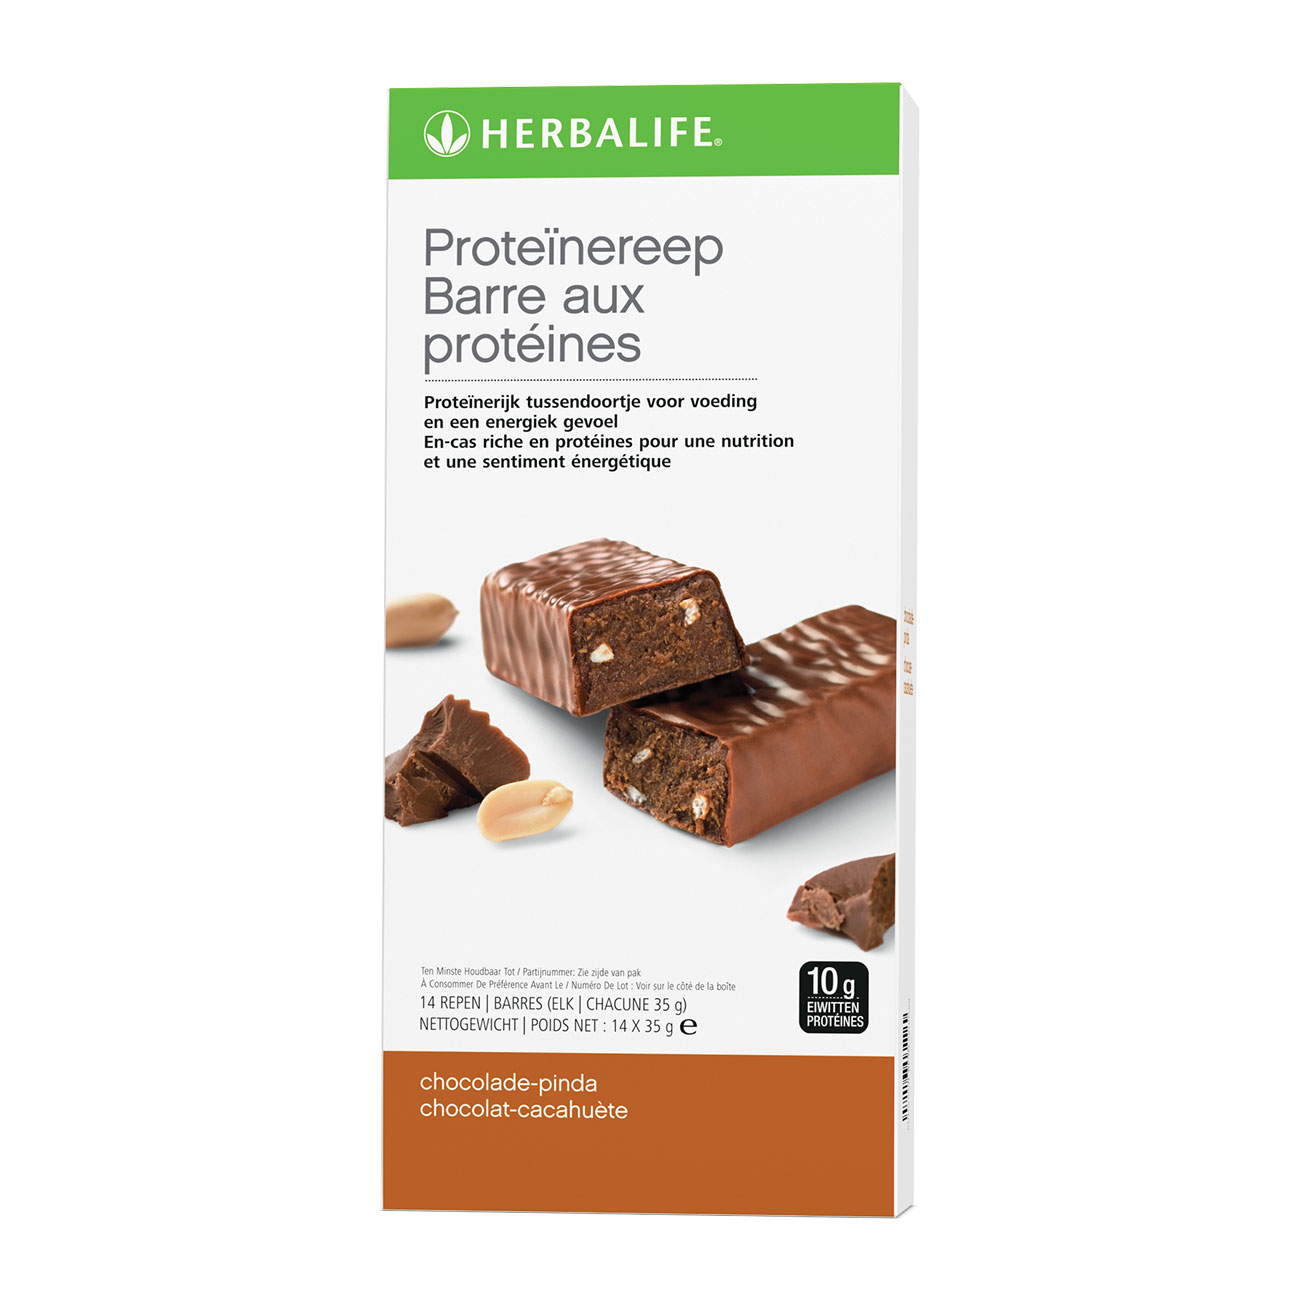 Barres aux Protéines Encas minceur Chocolat Cacahuète product shot